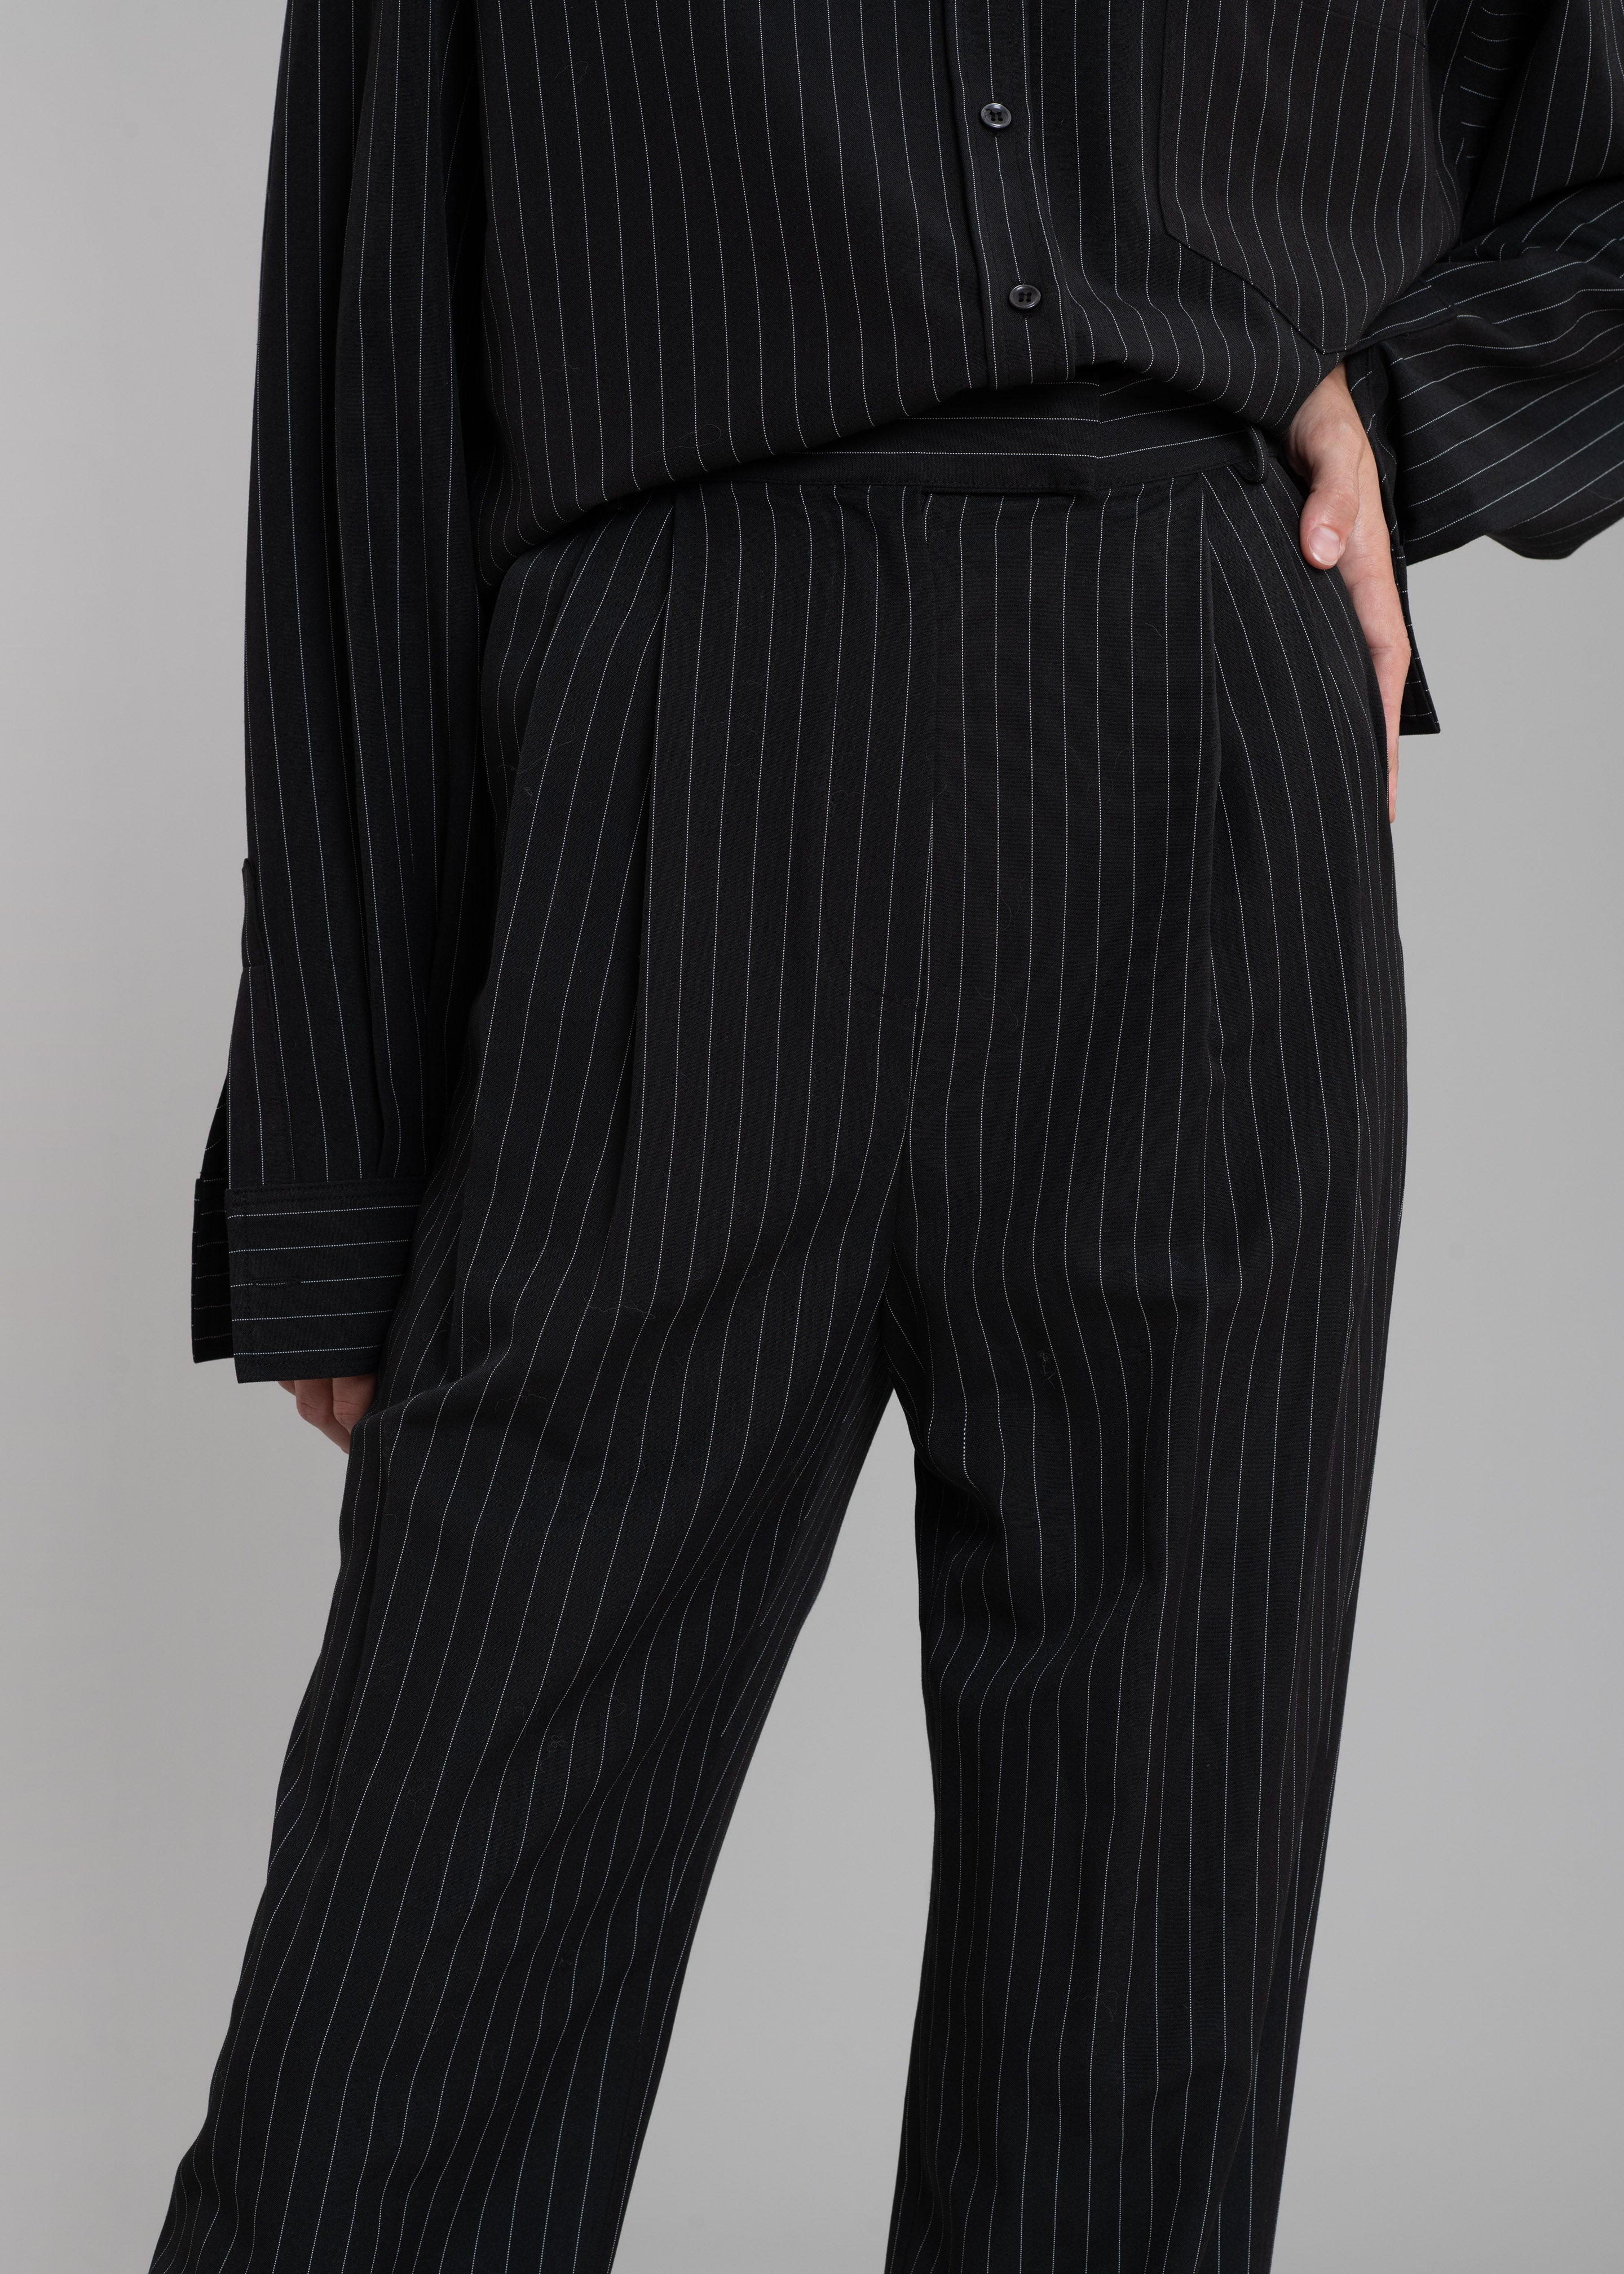 Bea Fluid Pinstripe Suit Pants - Black/White - 5